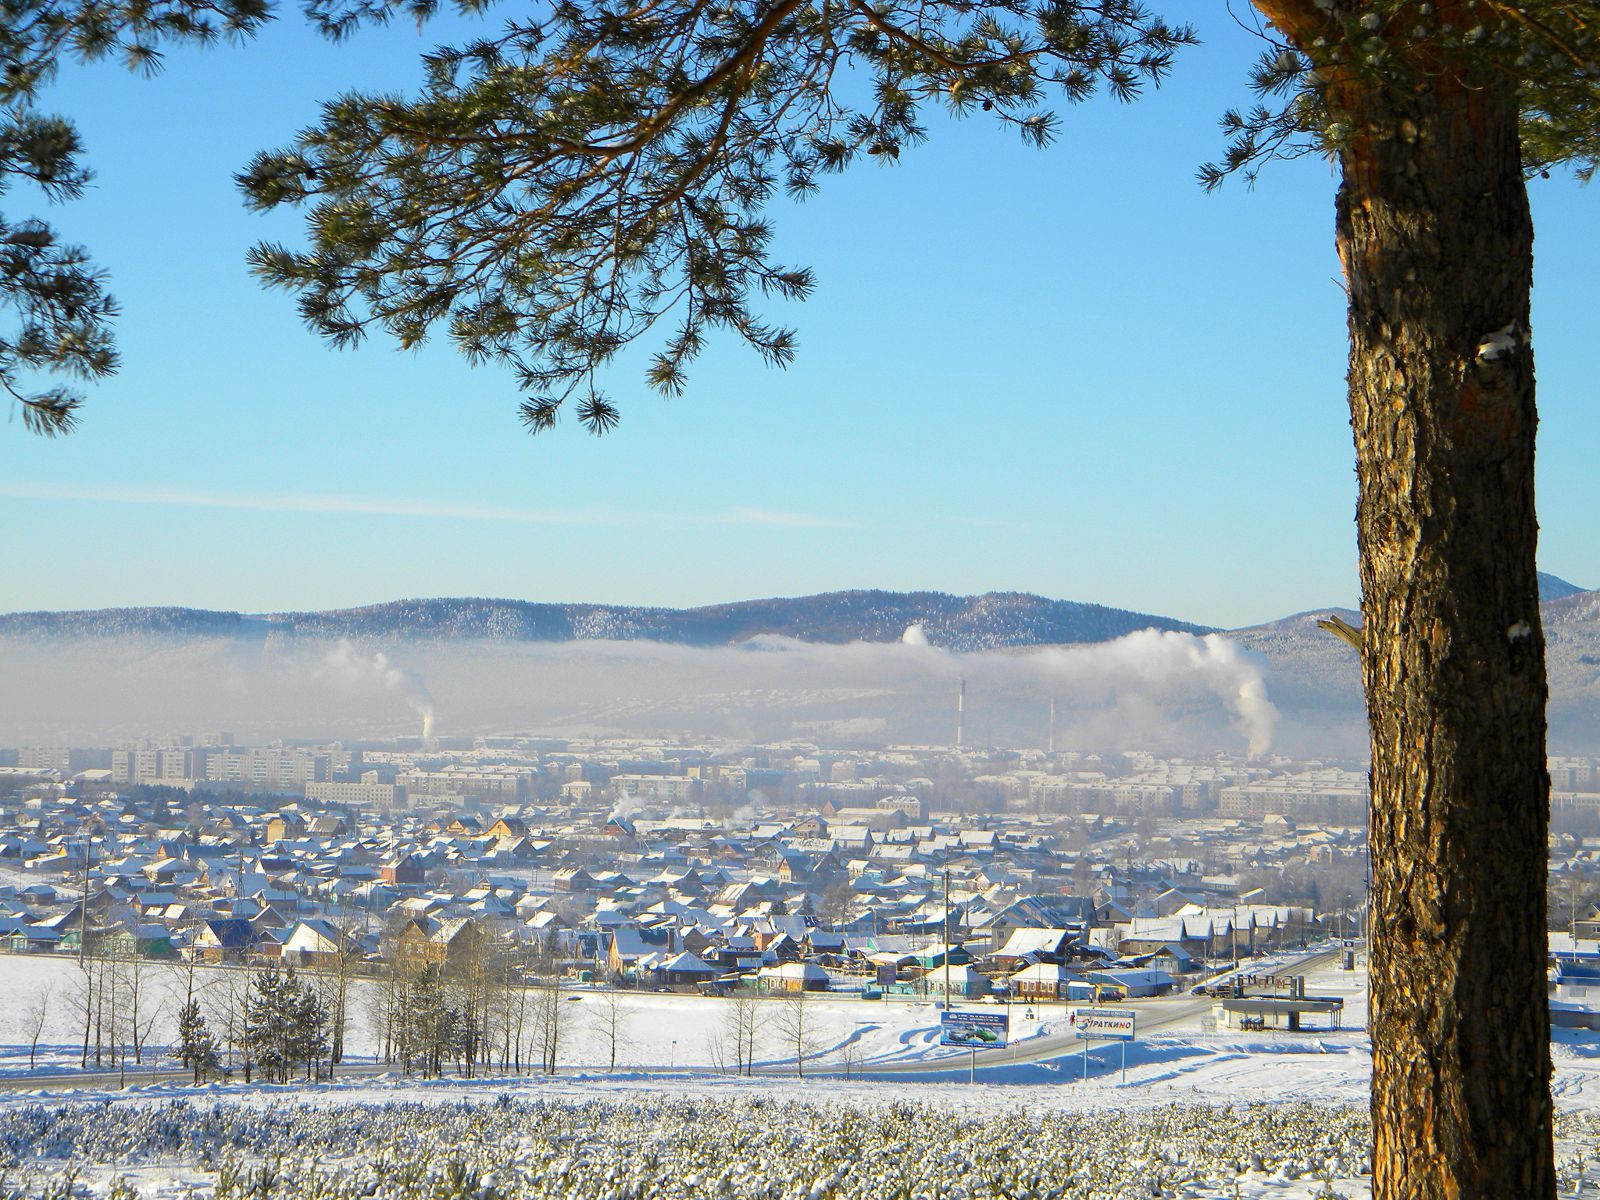 Достопримечательности природы в Белорецке зимой. Фотография Белорецка зимой. Белорецк фото 2012 года. Зимний Белорецк фото.